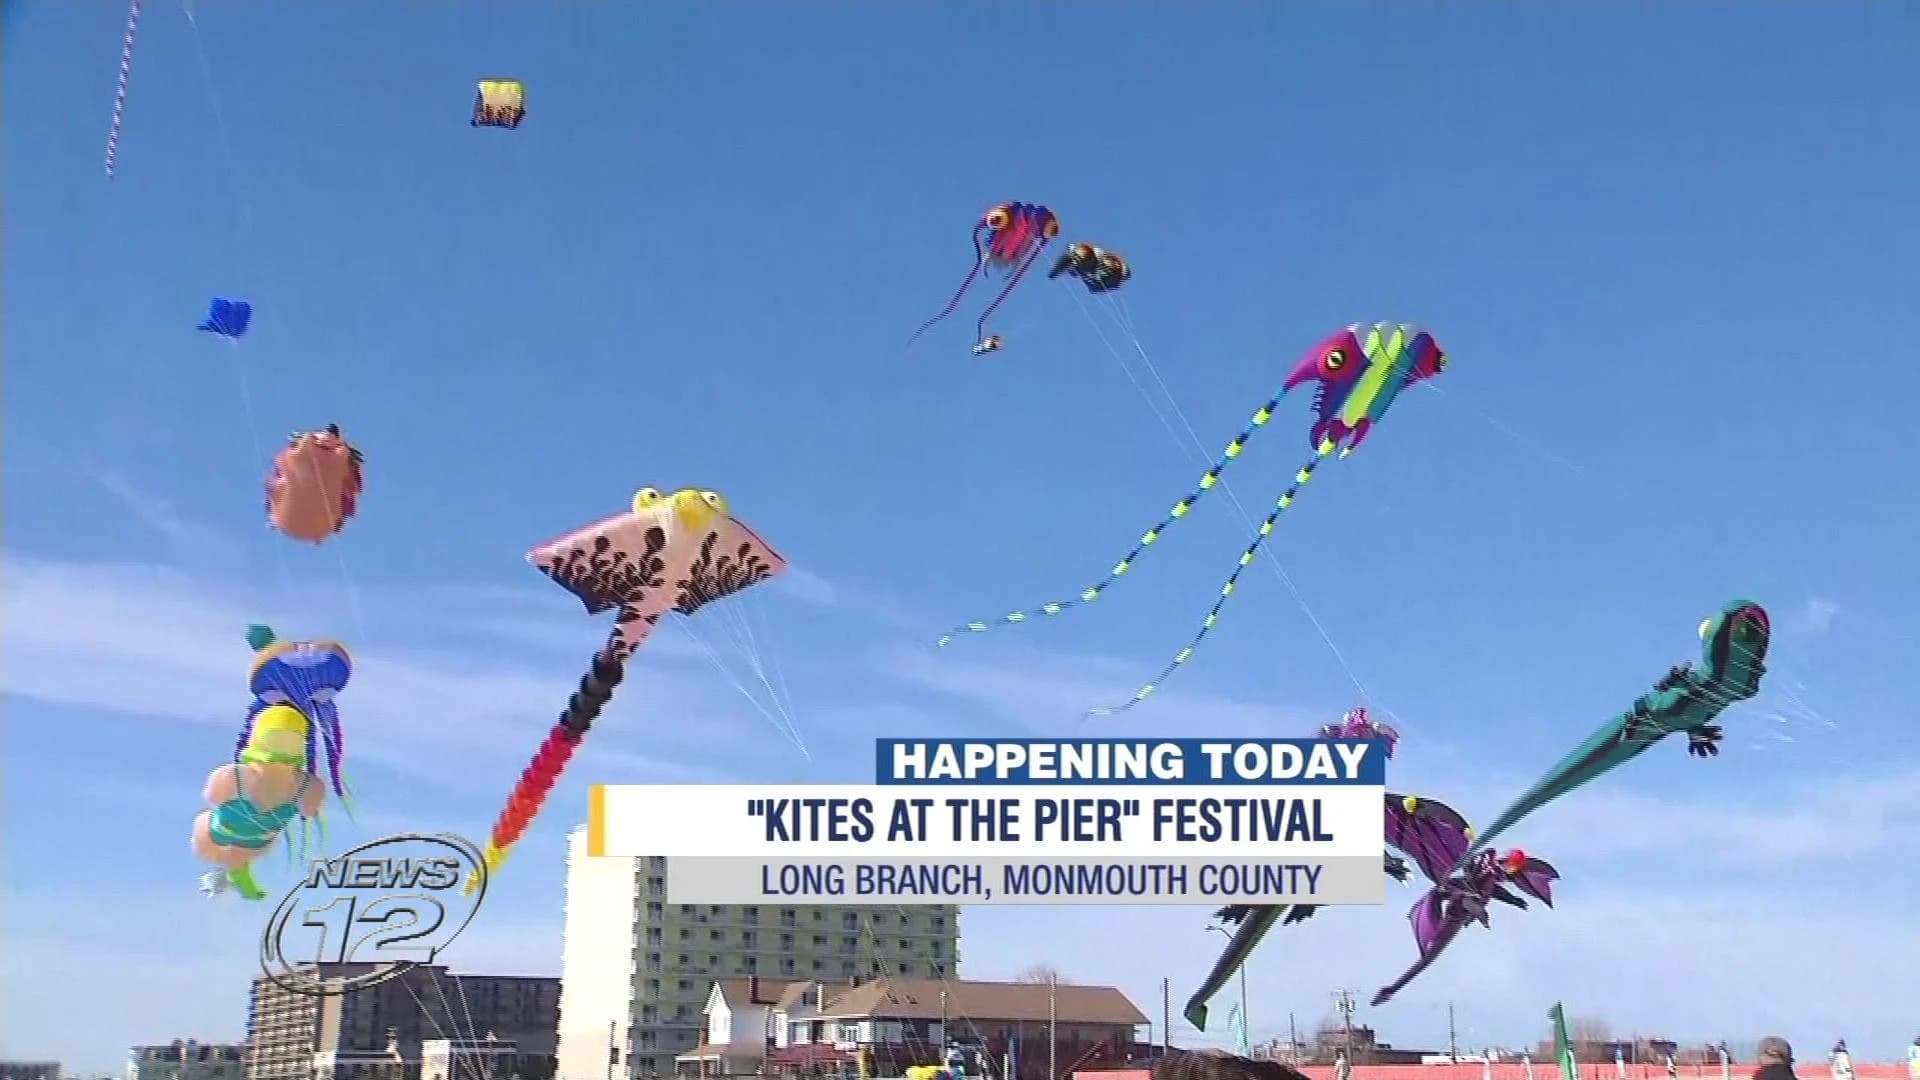 Kite festival kicks off in Long Branch